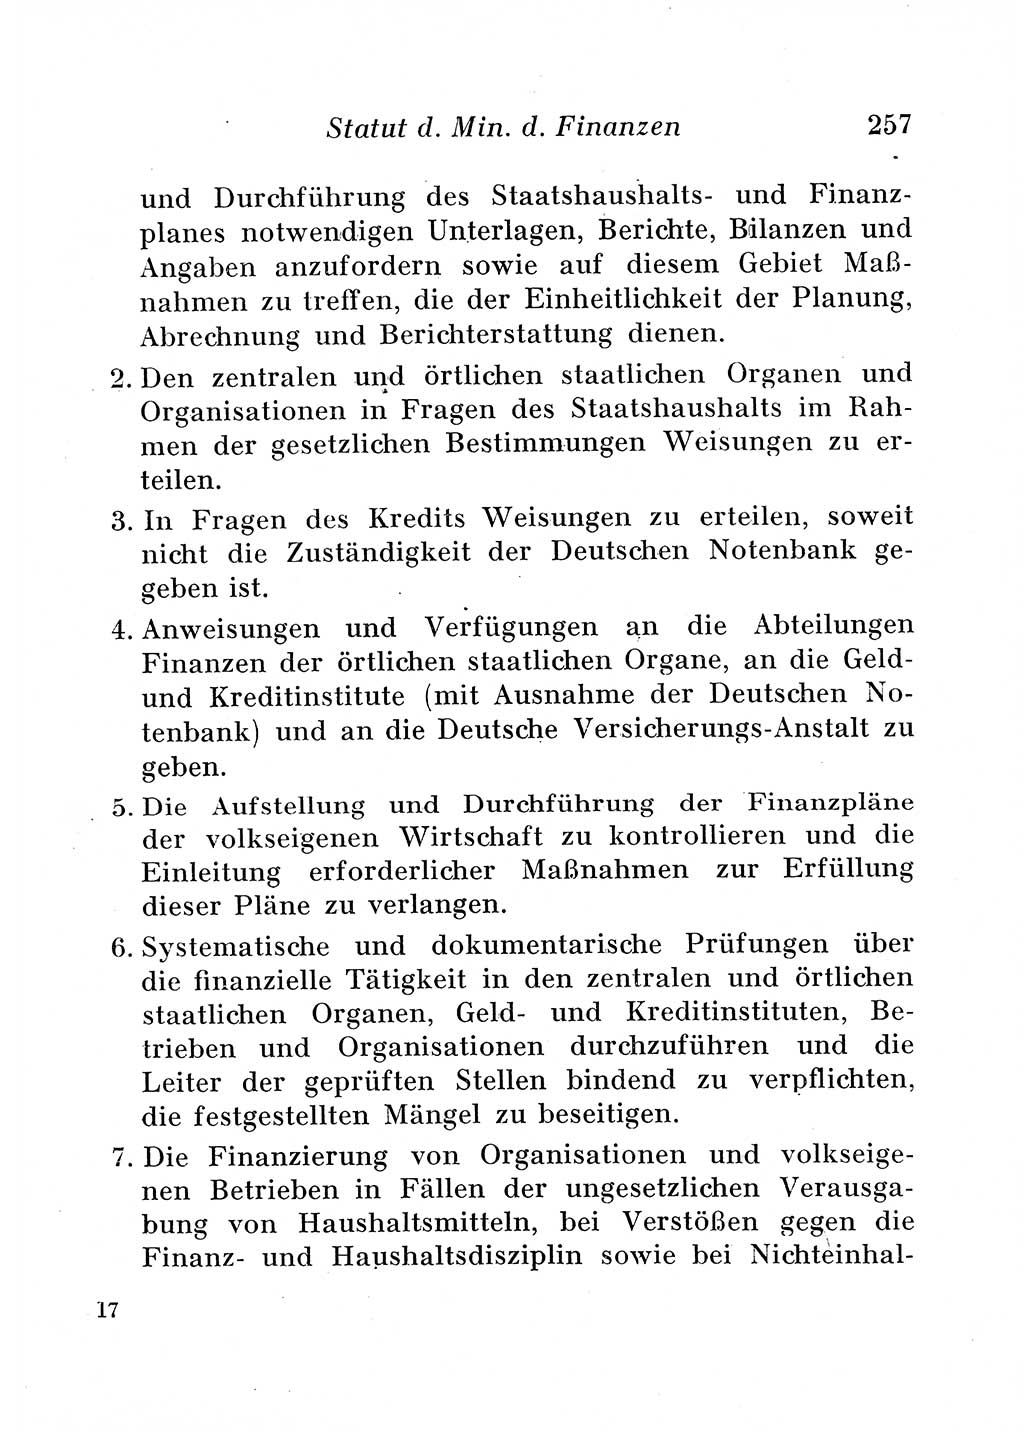 Staats- und verwaltungsrechtliche Gesetze der Deutschen Demokratischen Republik (DDR) 1958, Seite 257 (StVerwR Ges. DDR 1958, S. 257)